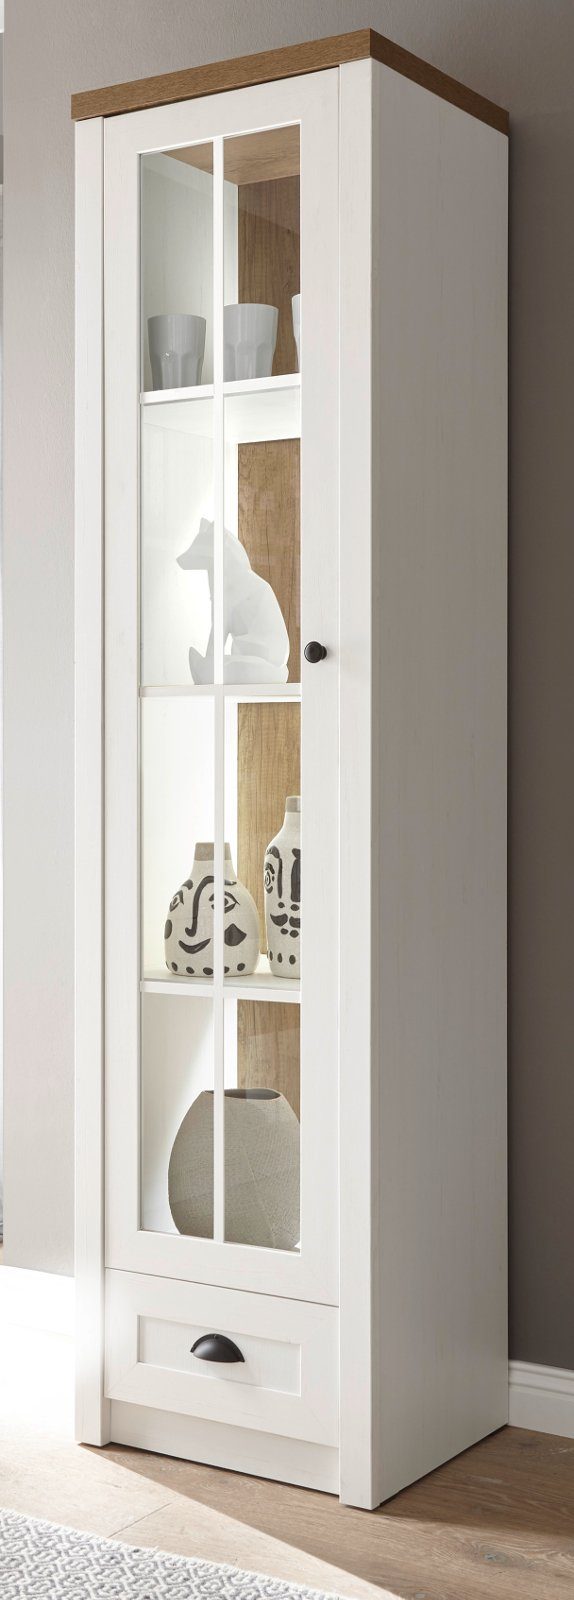 IMV Stauraumvitrine Seyne (Vitrinenschrank in Pinie weiß und Eiche, 50 x 198 cm) Moderner Landhausstil, Türanschlag wechselbar | Vitrinenschränke